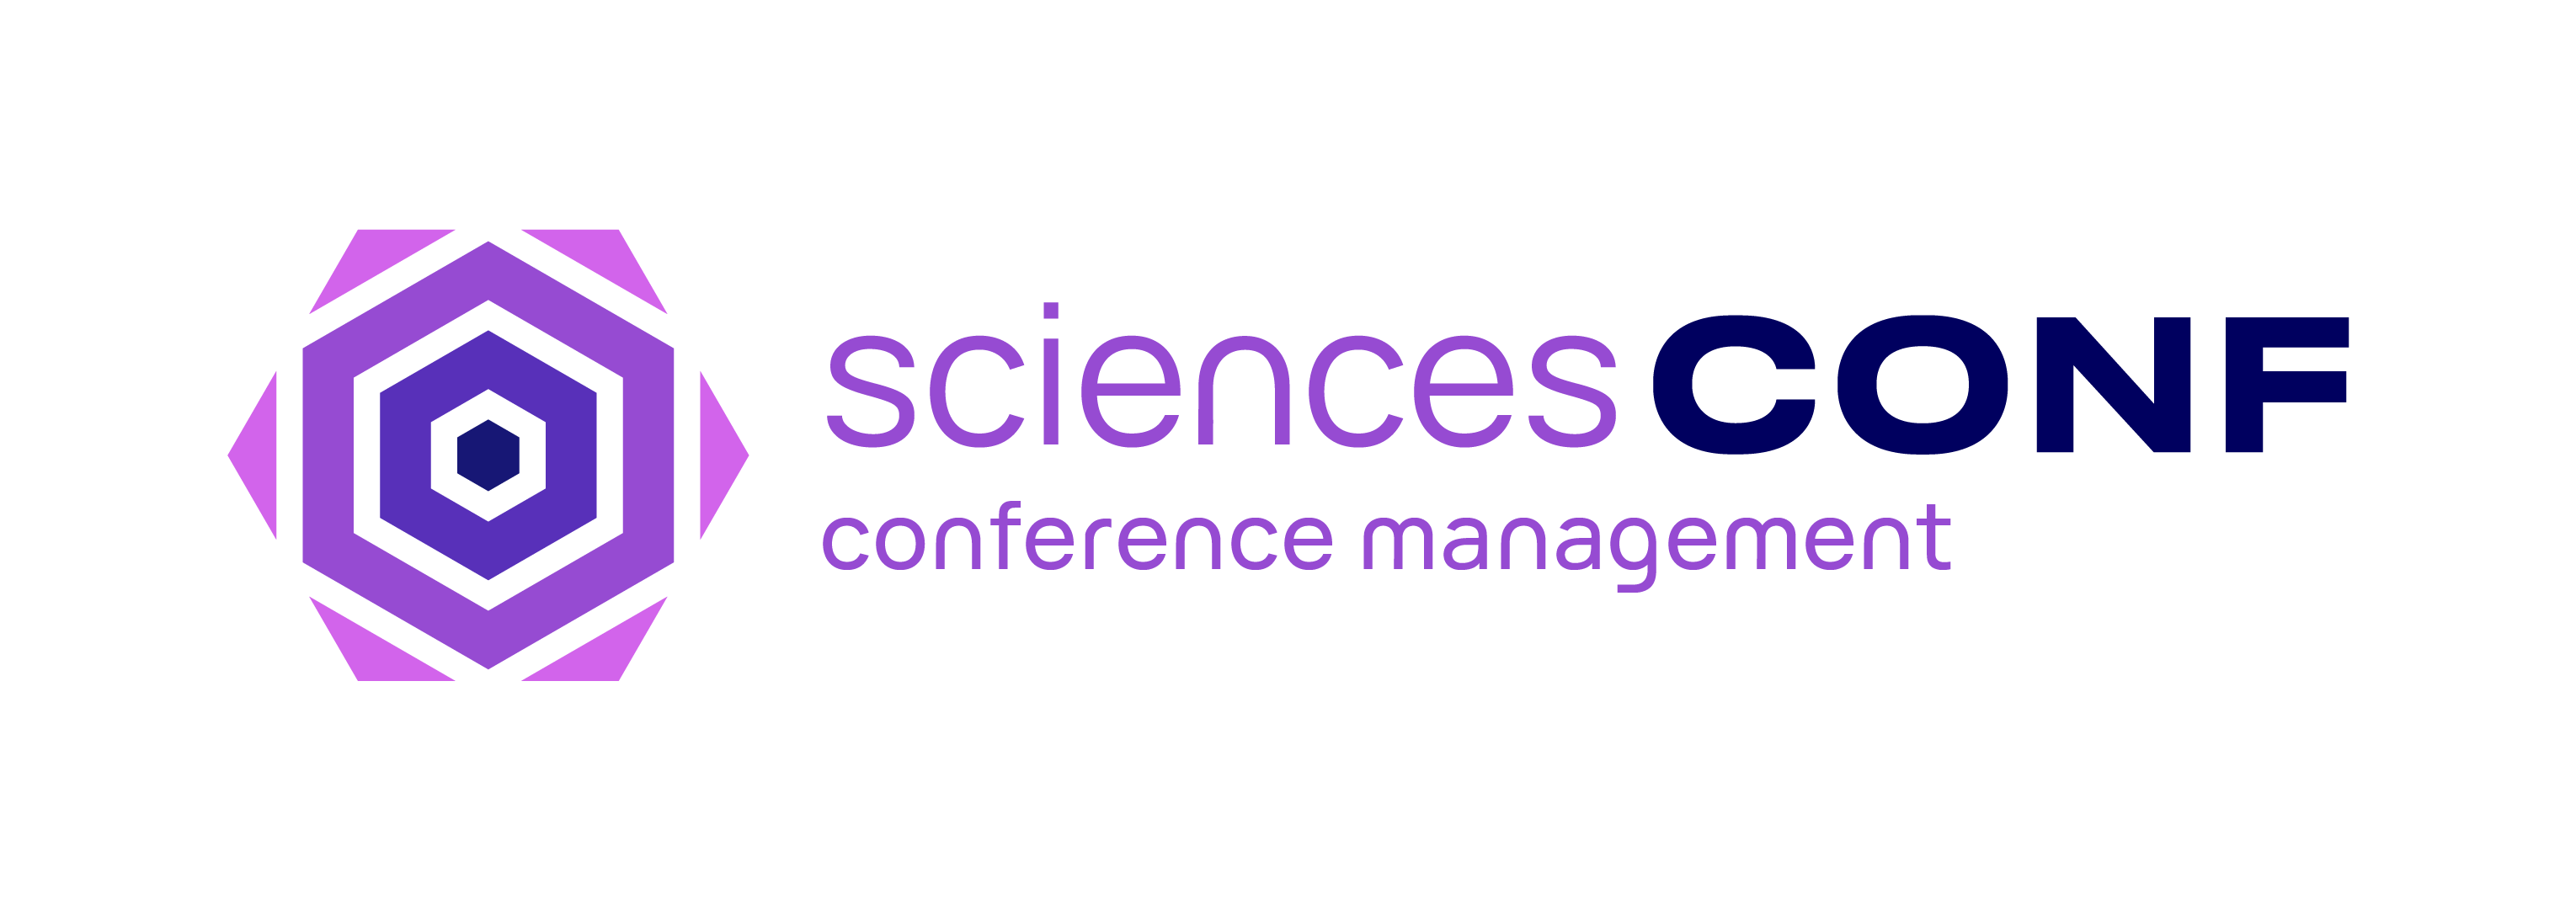 Sciencesconf conference management